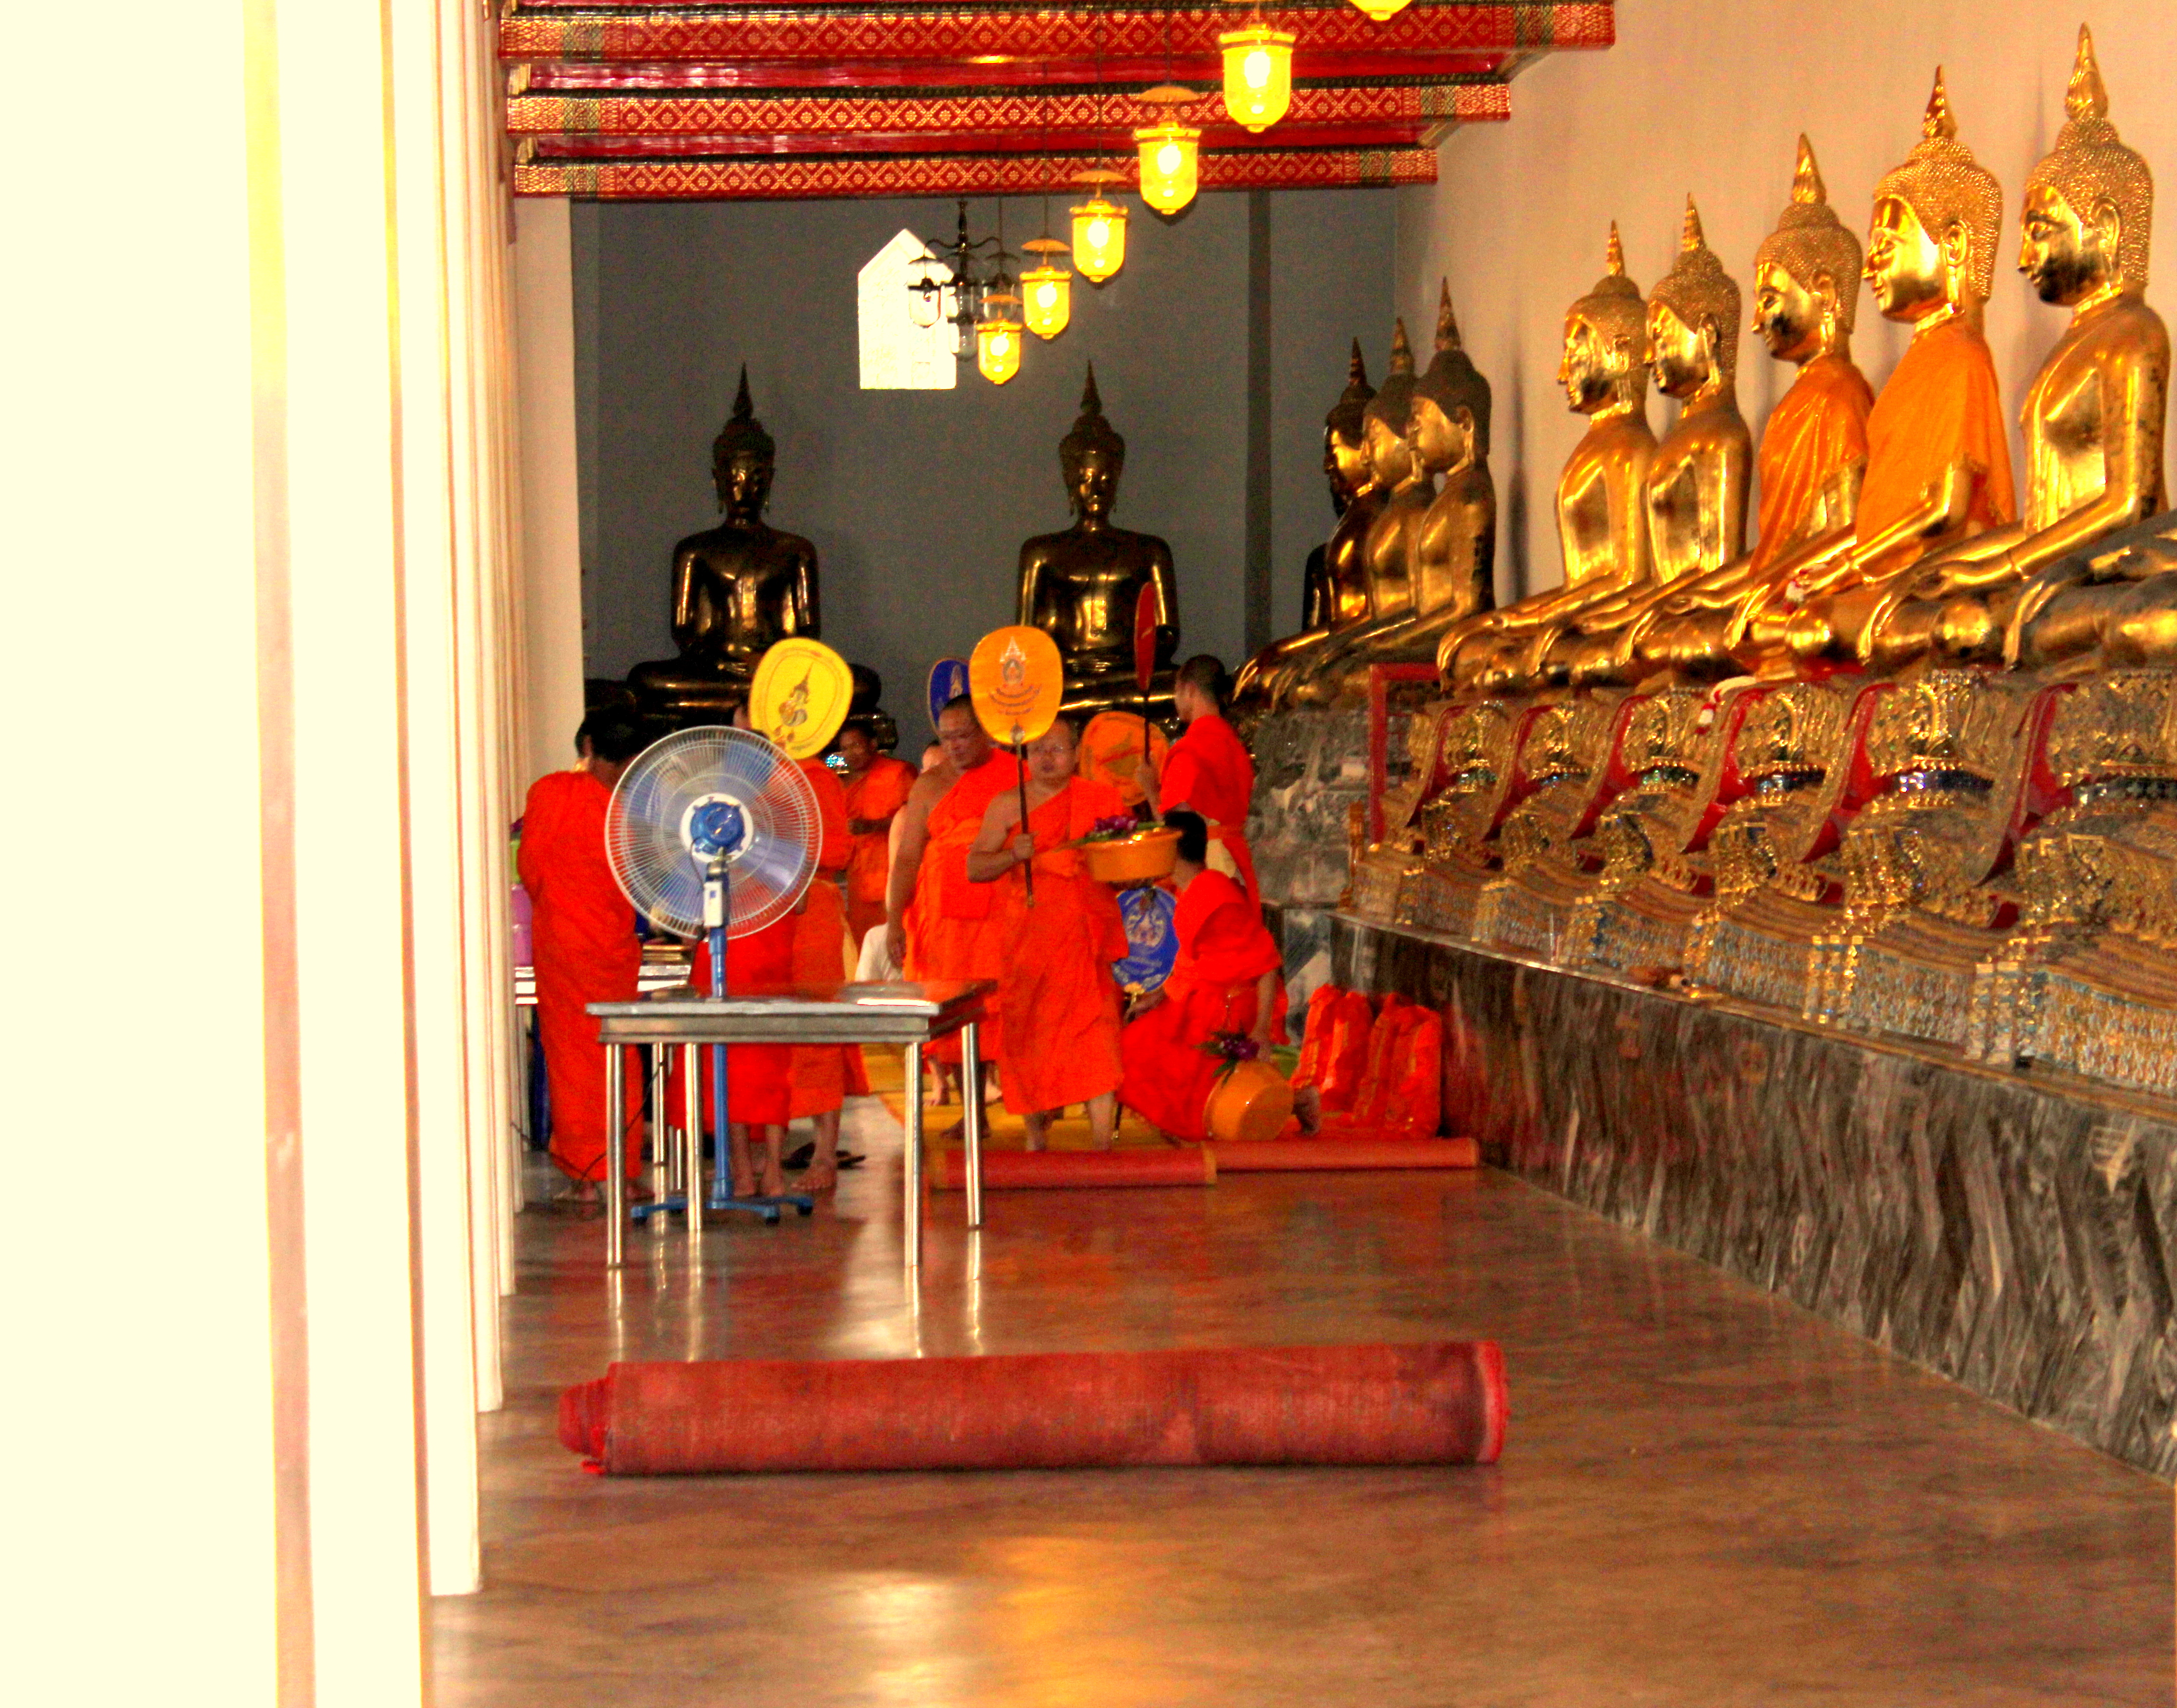 Monks in Thailand